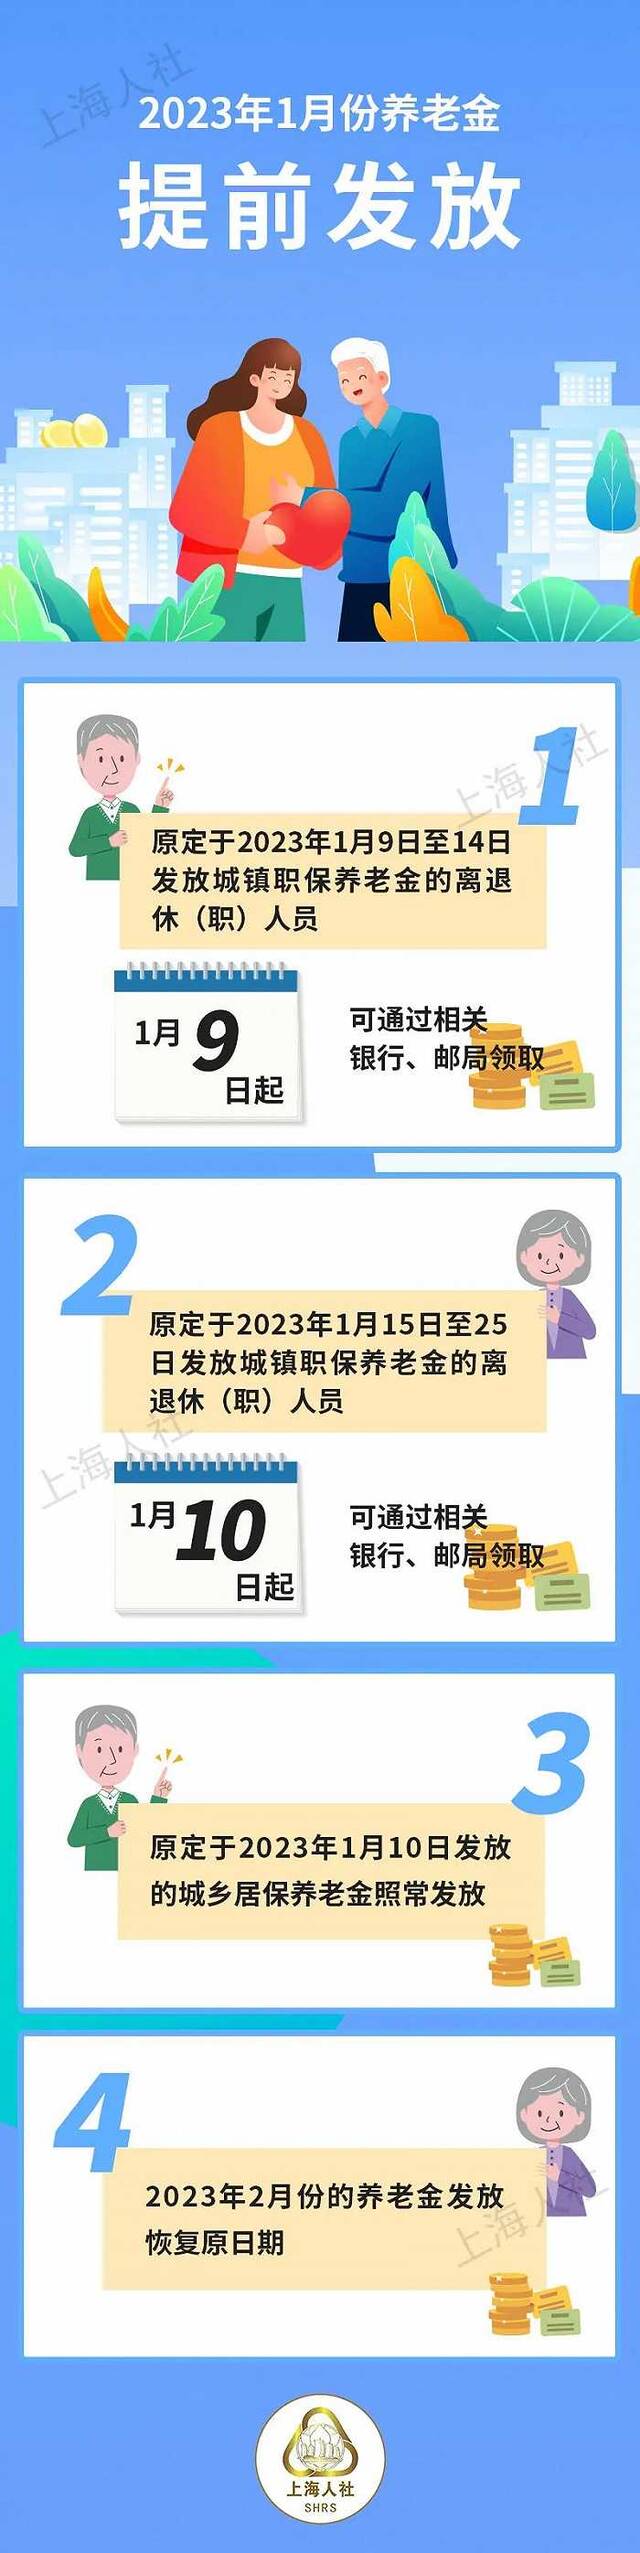 上海对春节长假期间退休人员养老金提前发放